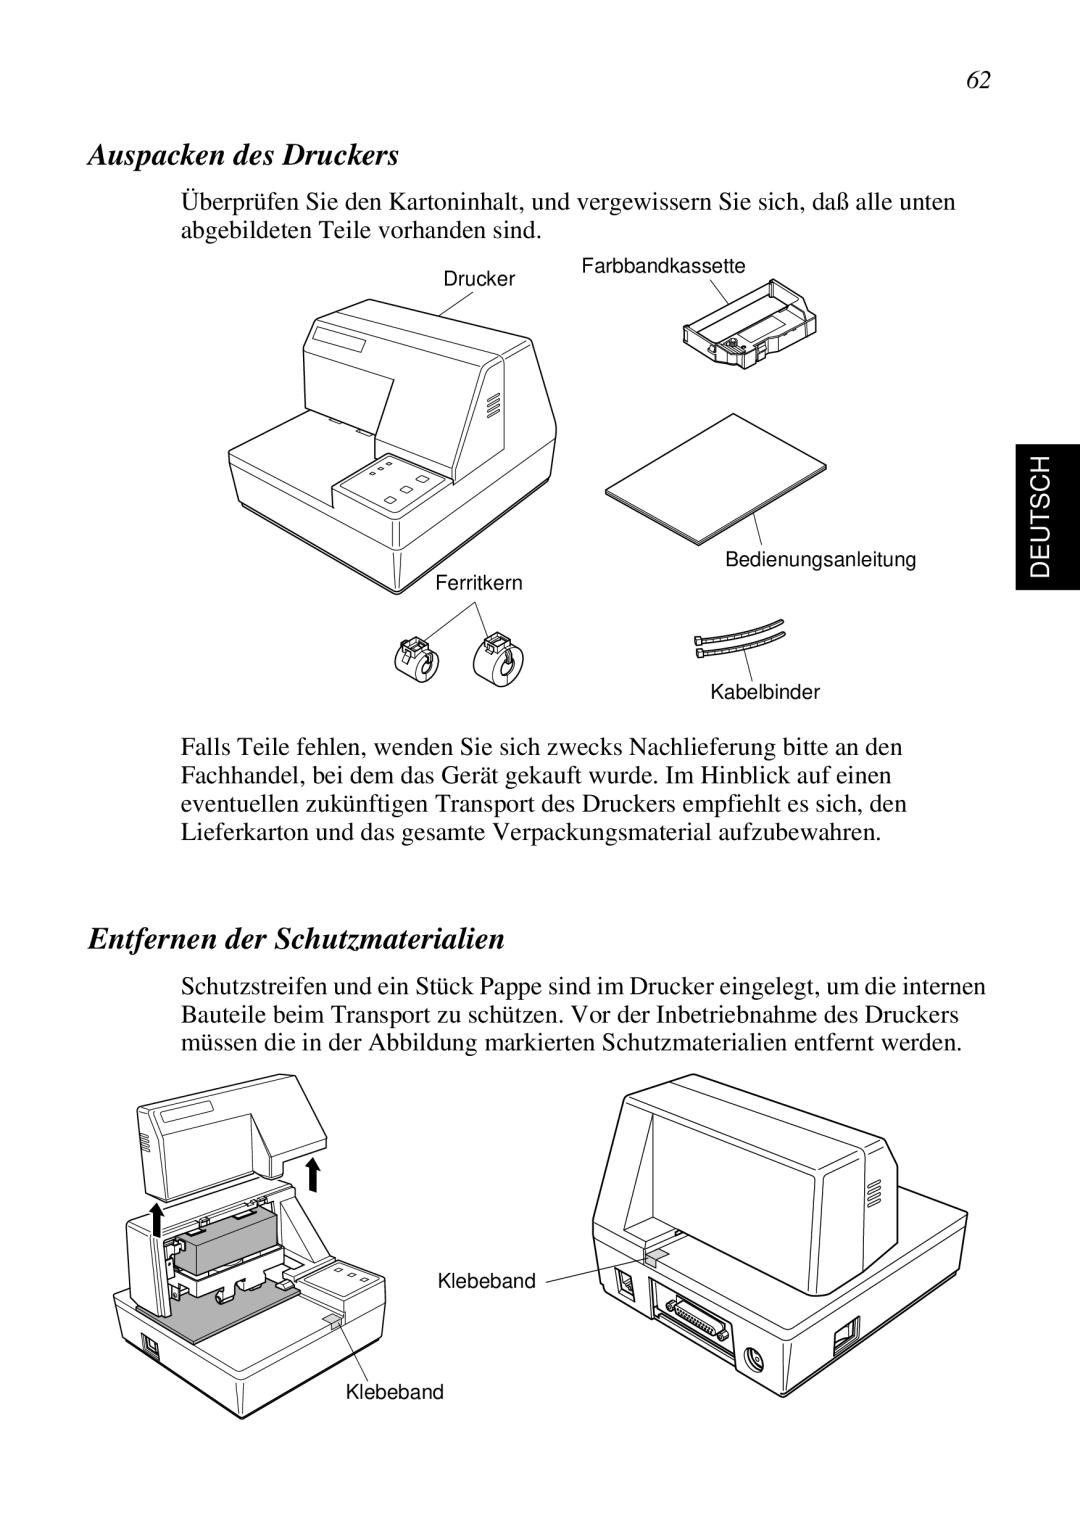 Star Micronics SP298 user manual Auspacken des Druckers, Entfernen der Schutzmaterialien, Deutsch 